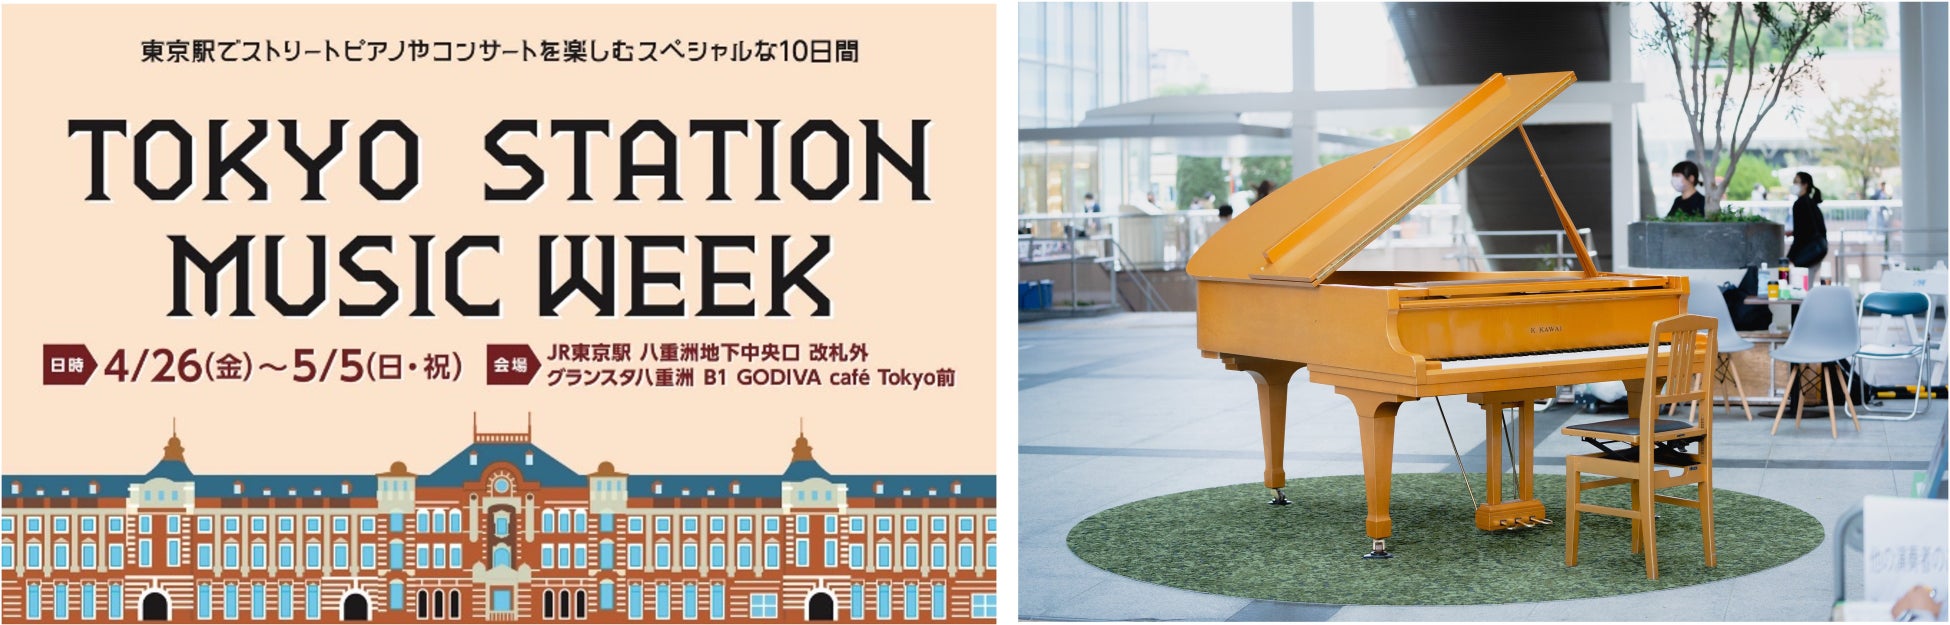 レッドバロン×東京九州フェリーコラボレーション企画商品「九州ツーリングプラン」を発表